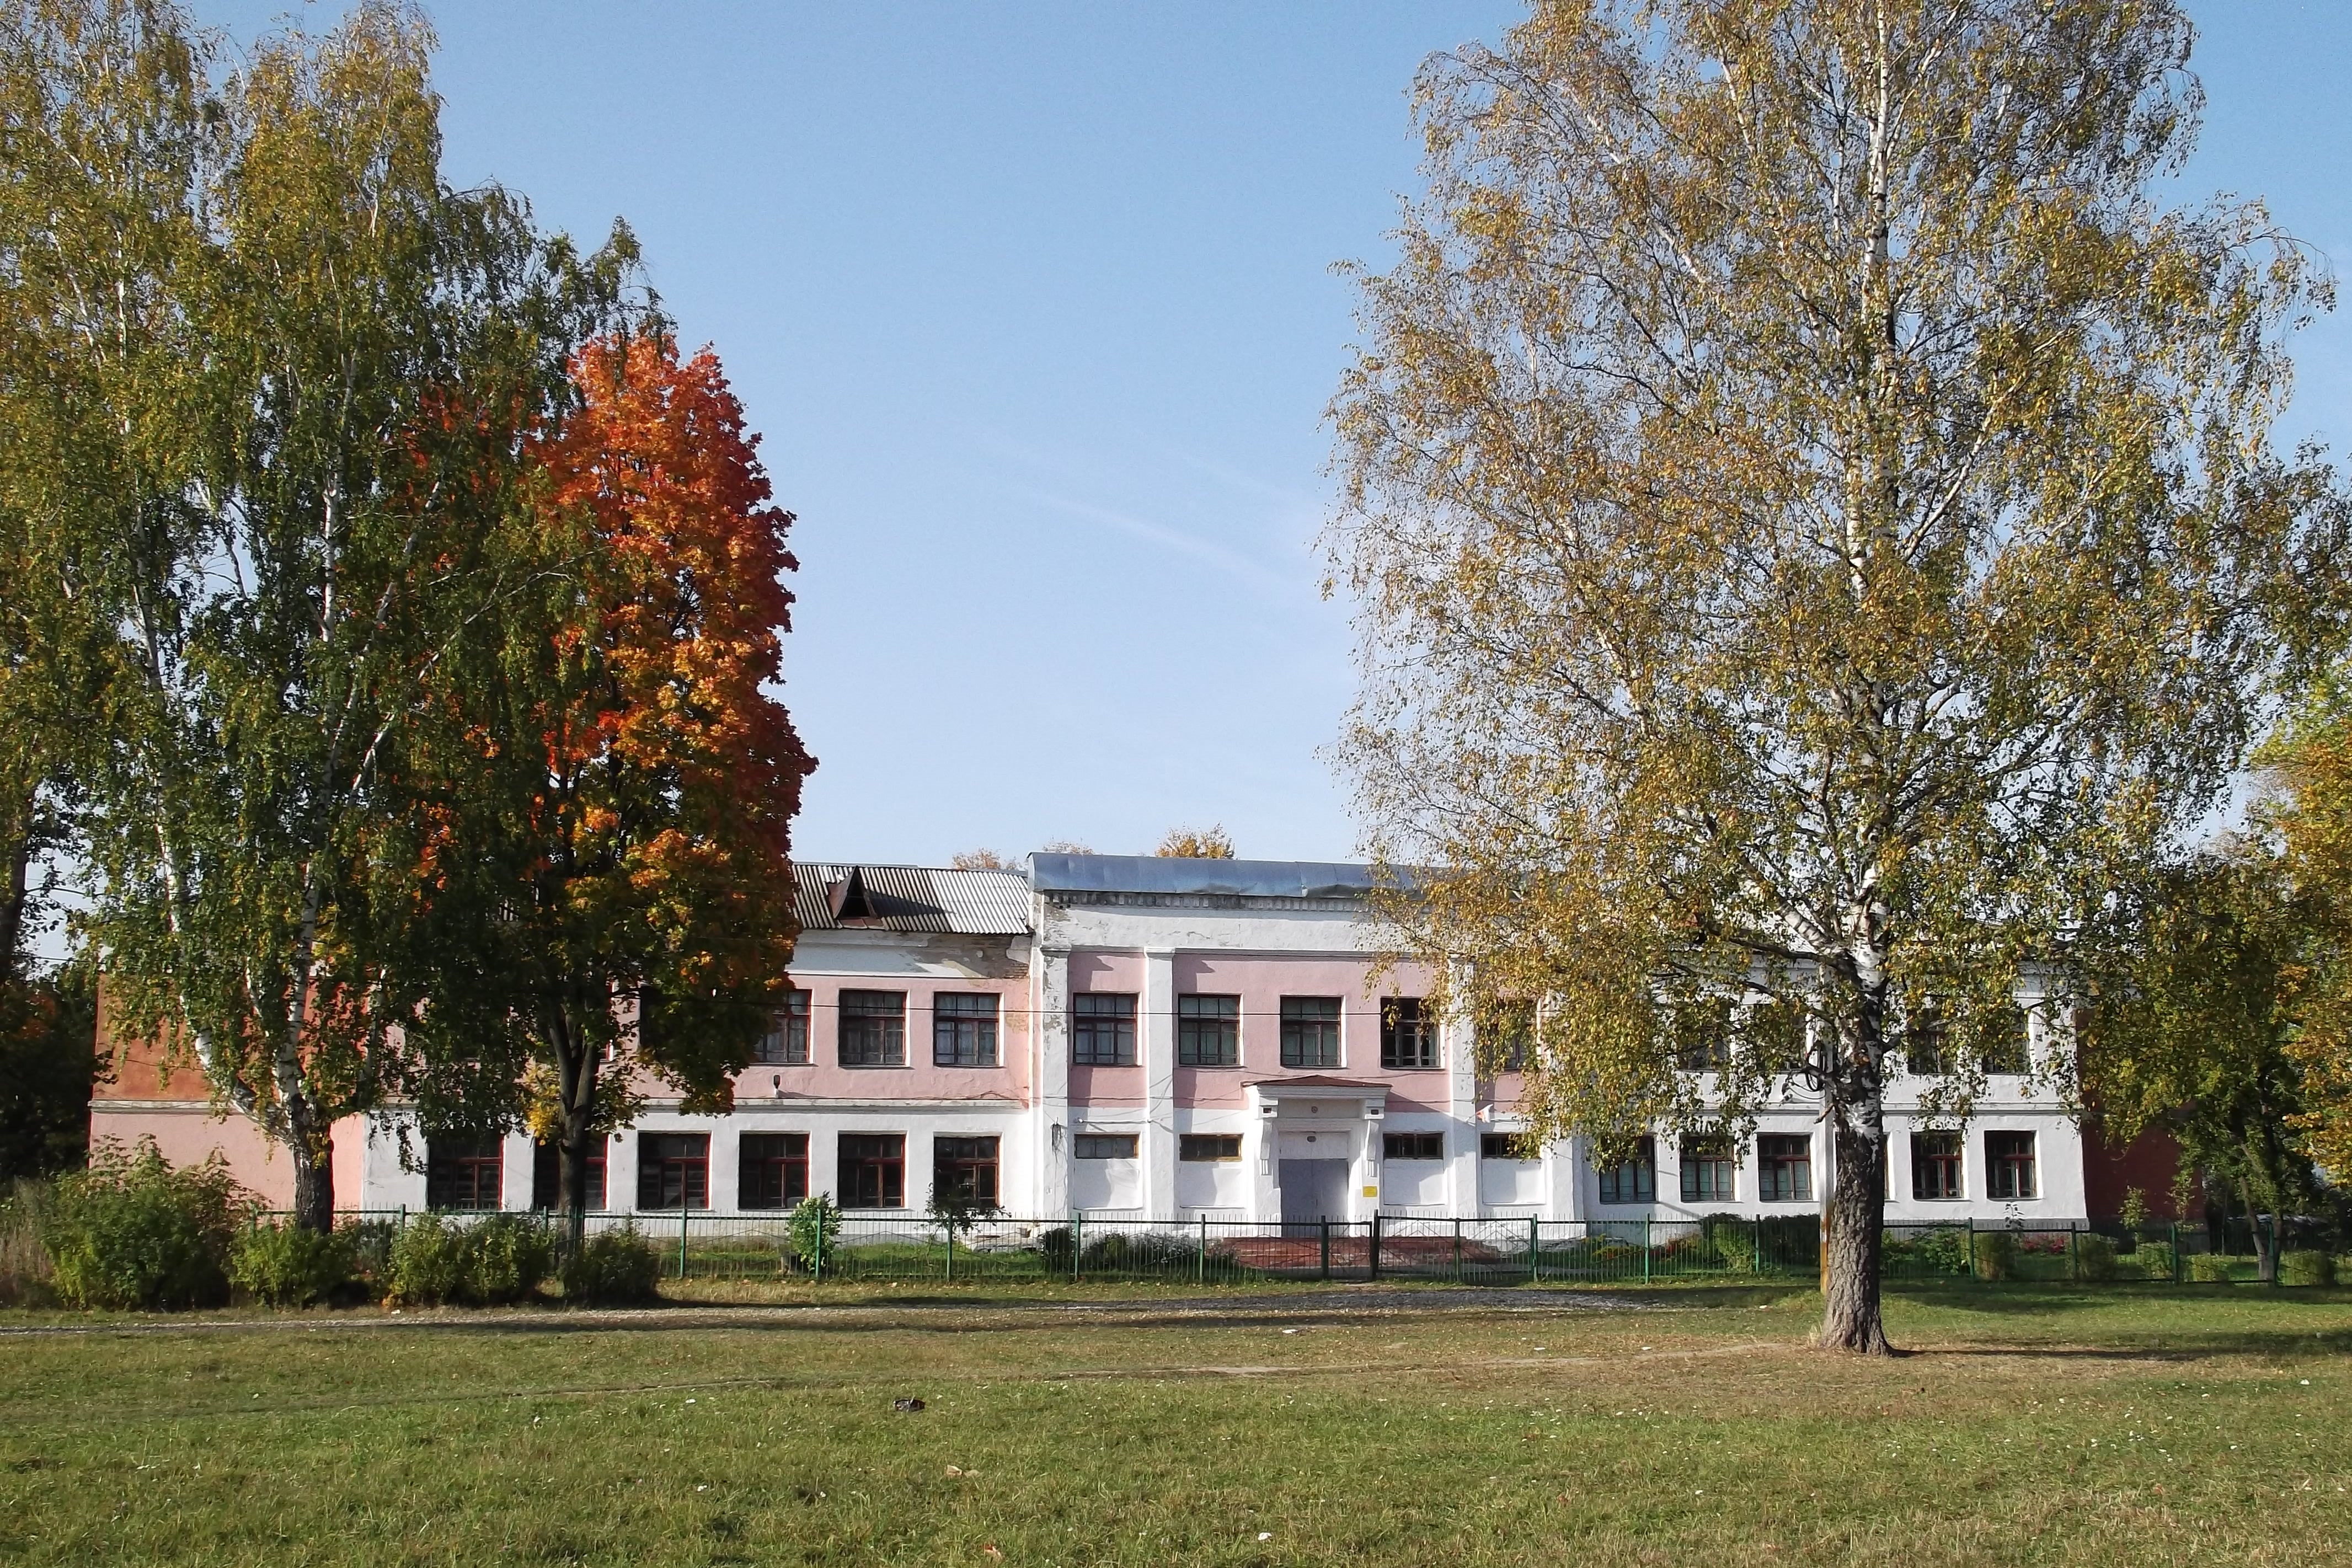 Здание основной школы